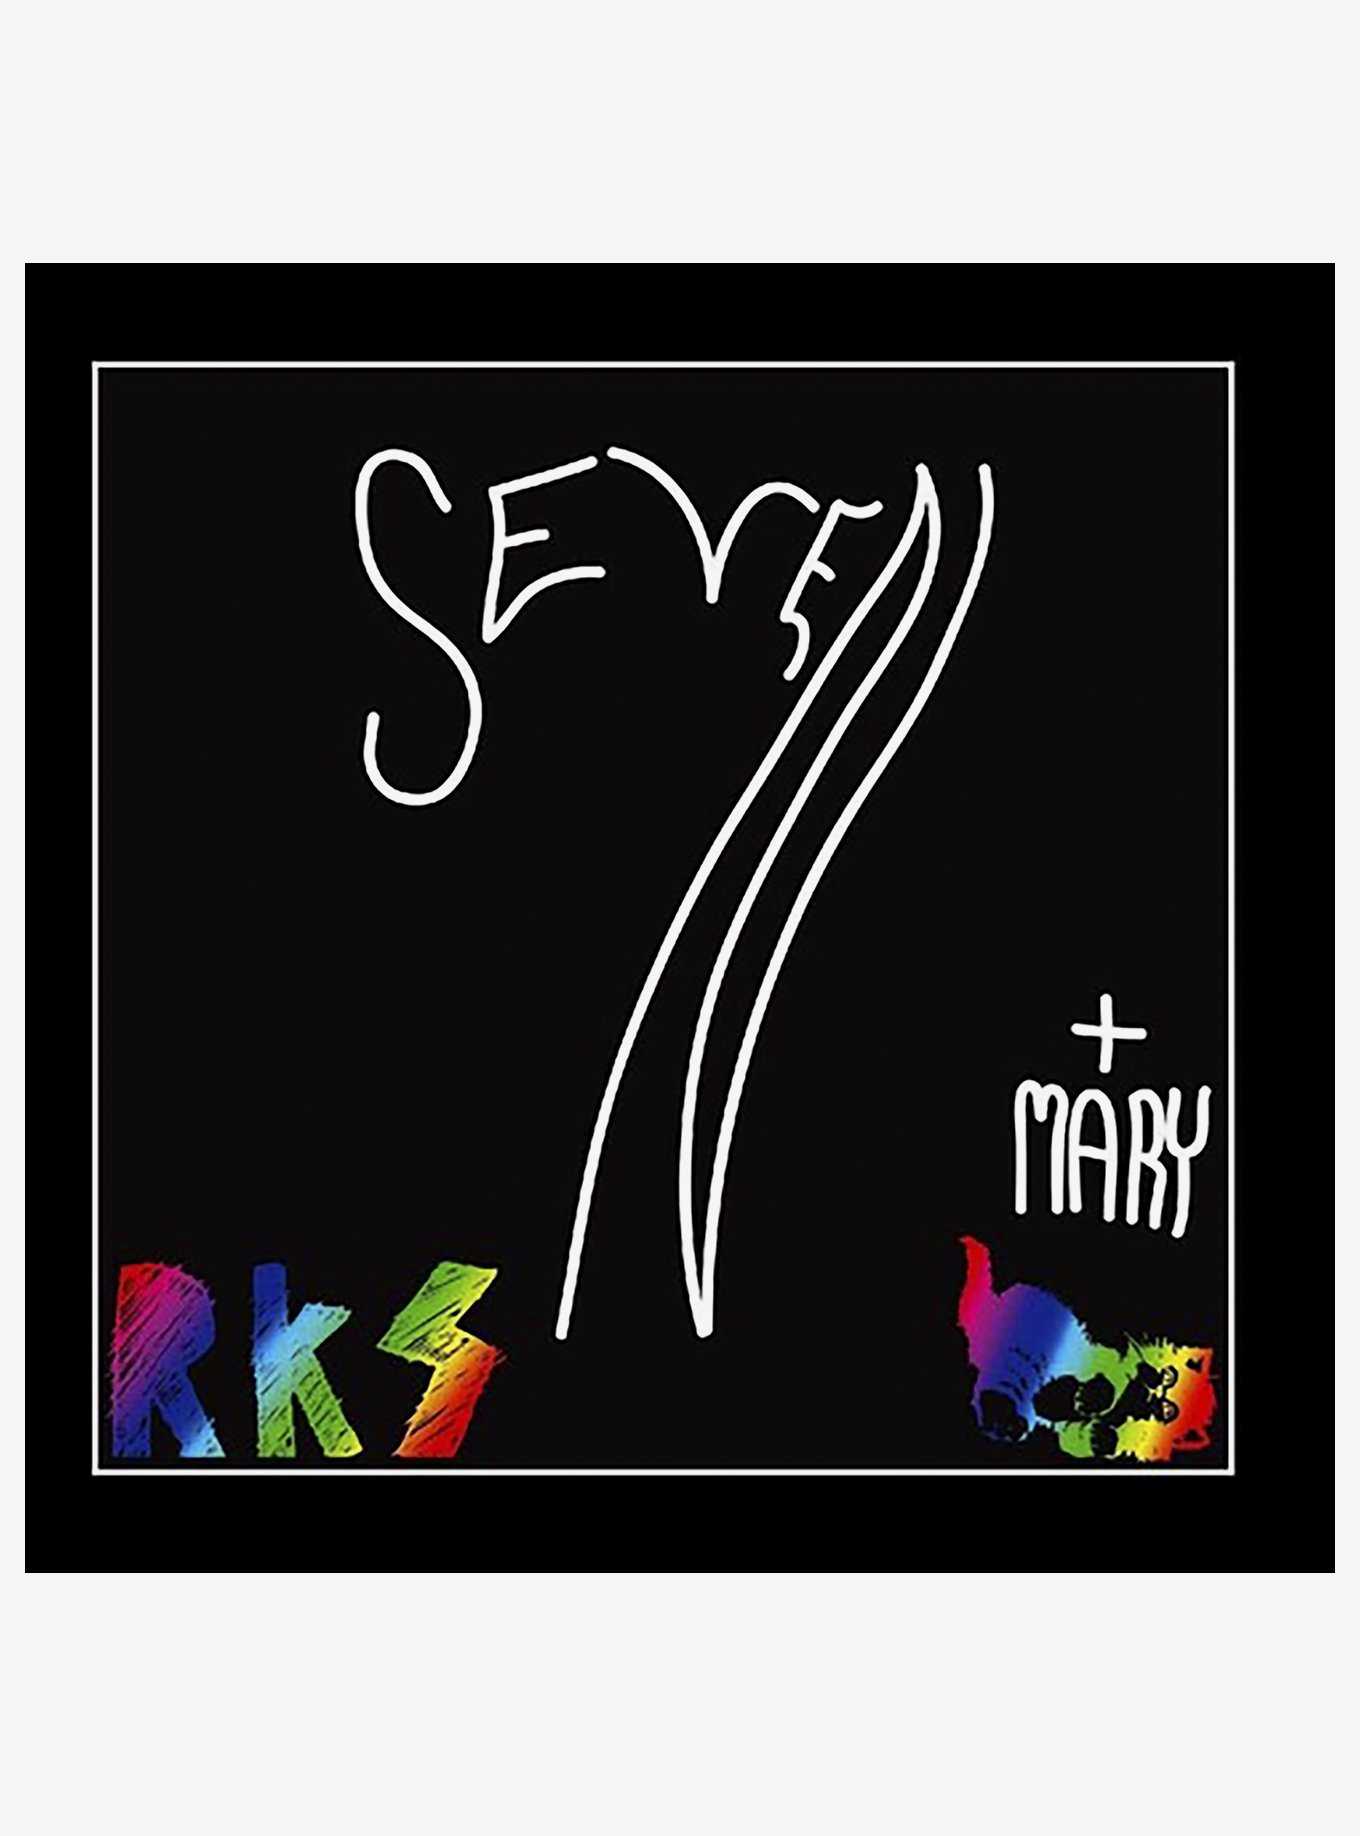 Rainbow Kitten Surprise Seven + Mary Vinyl LP, , hi-res